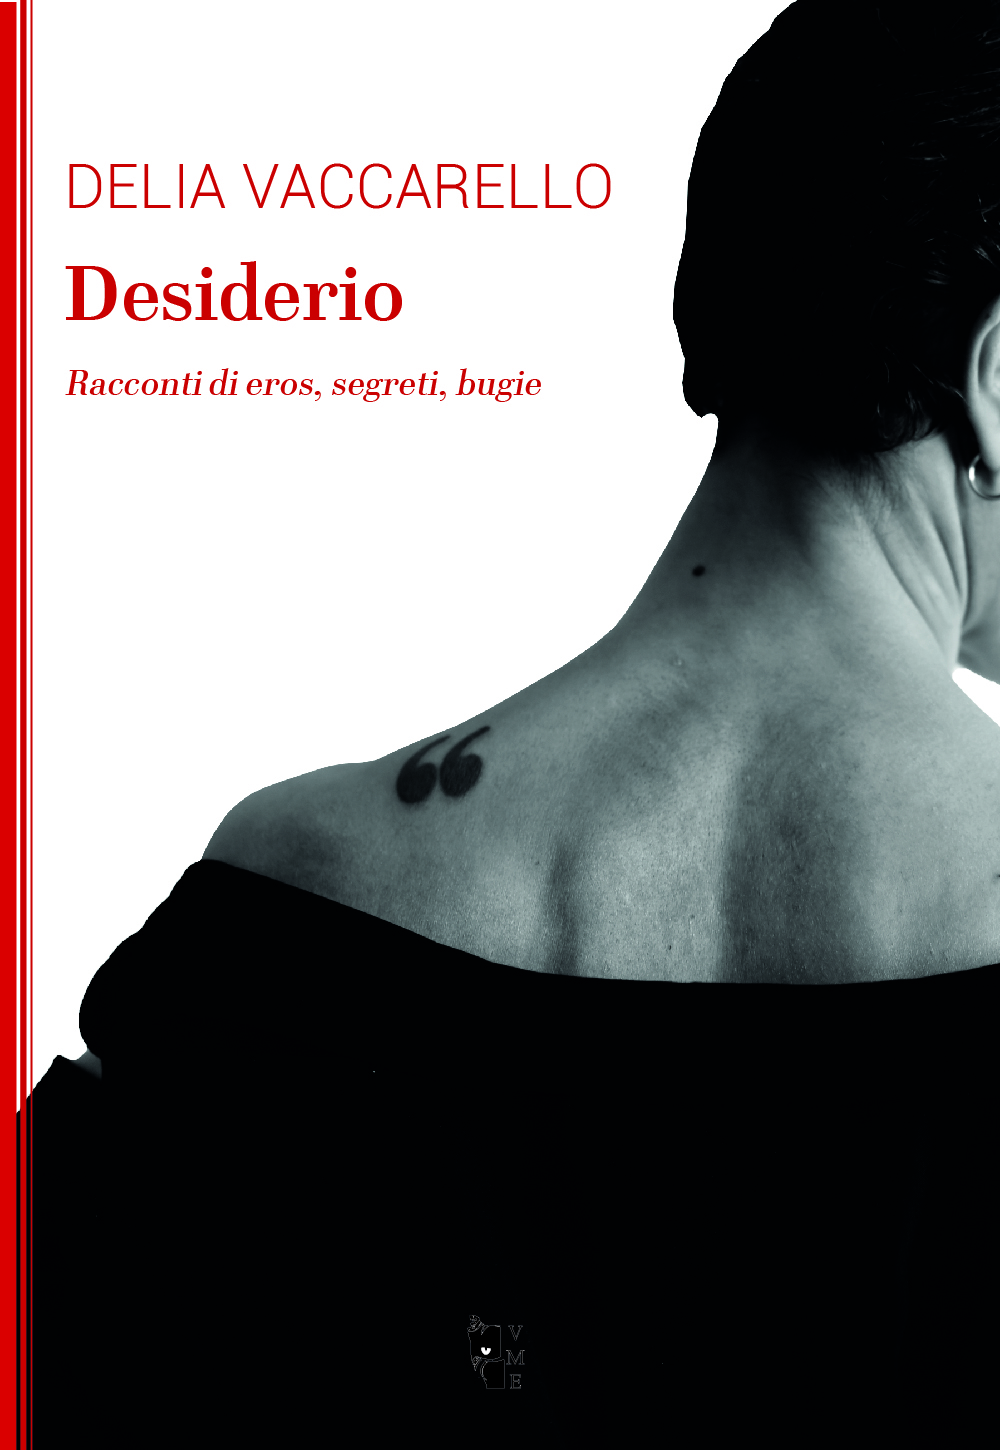 Delia Vaccarello, Desiderio. Racconti di eros, segreti, bugie 